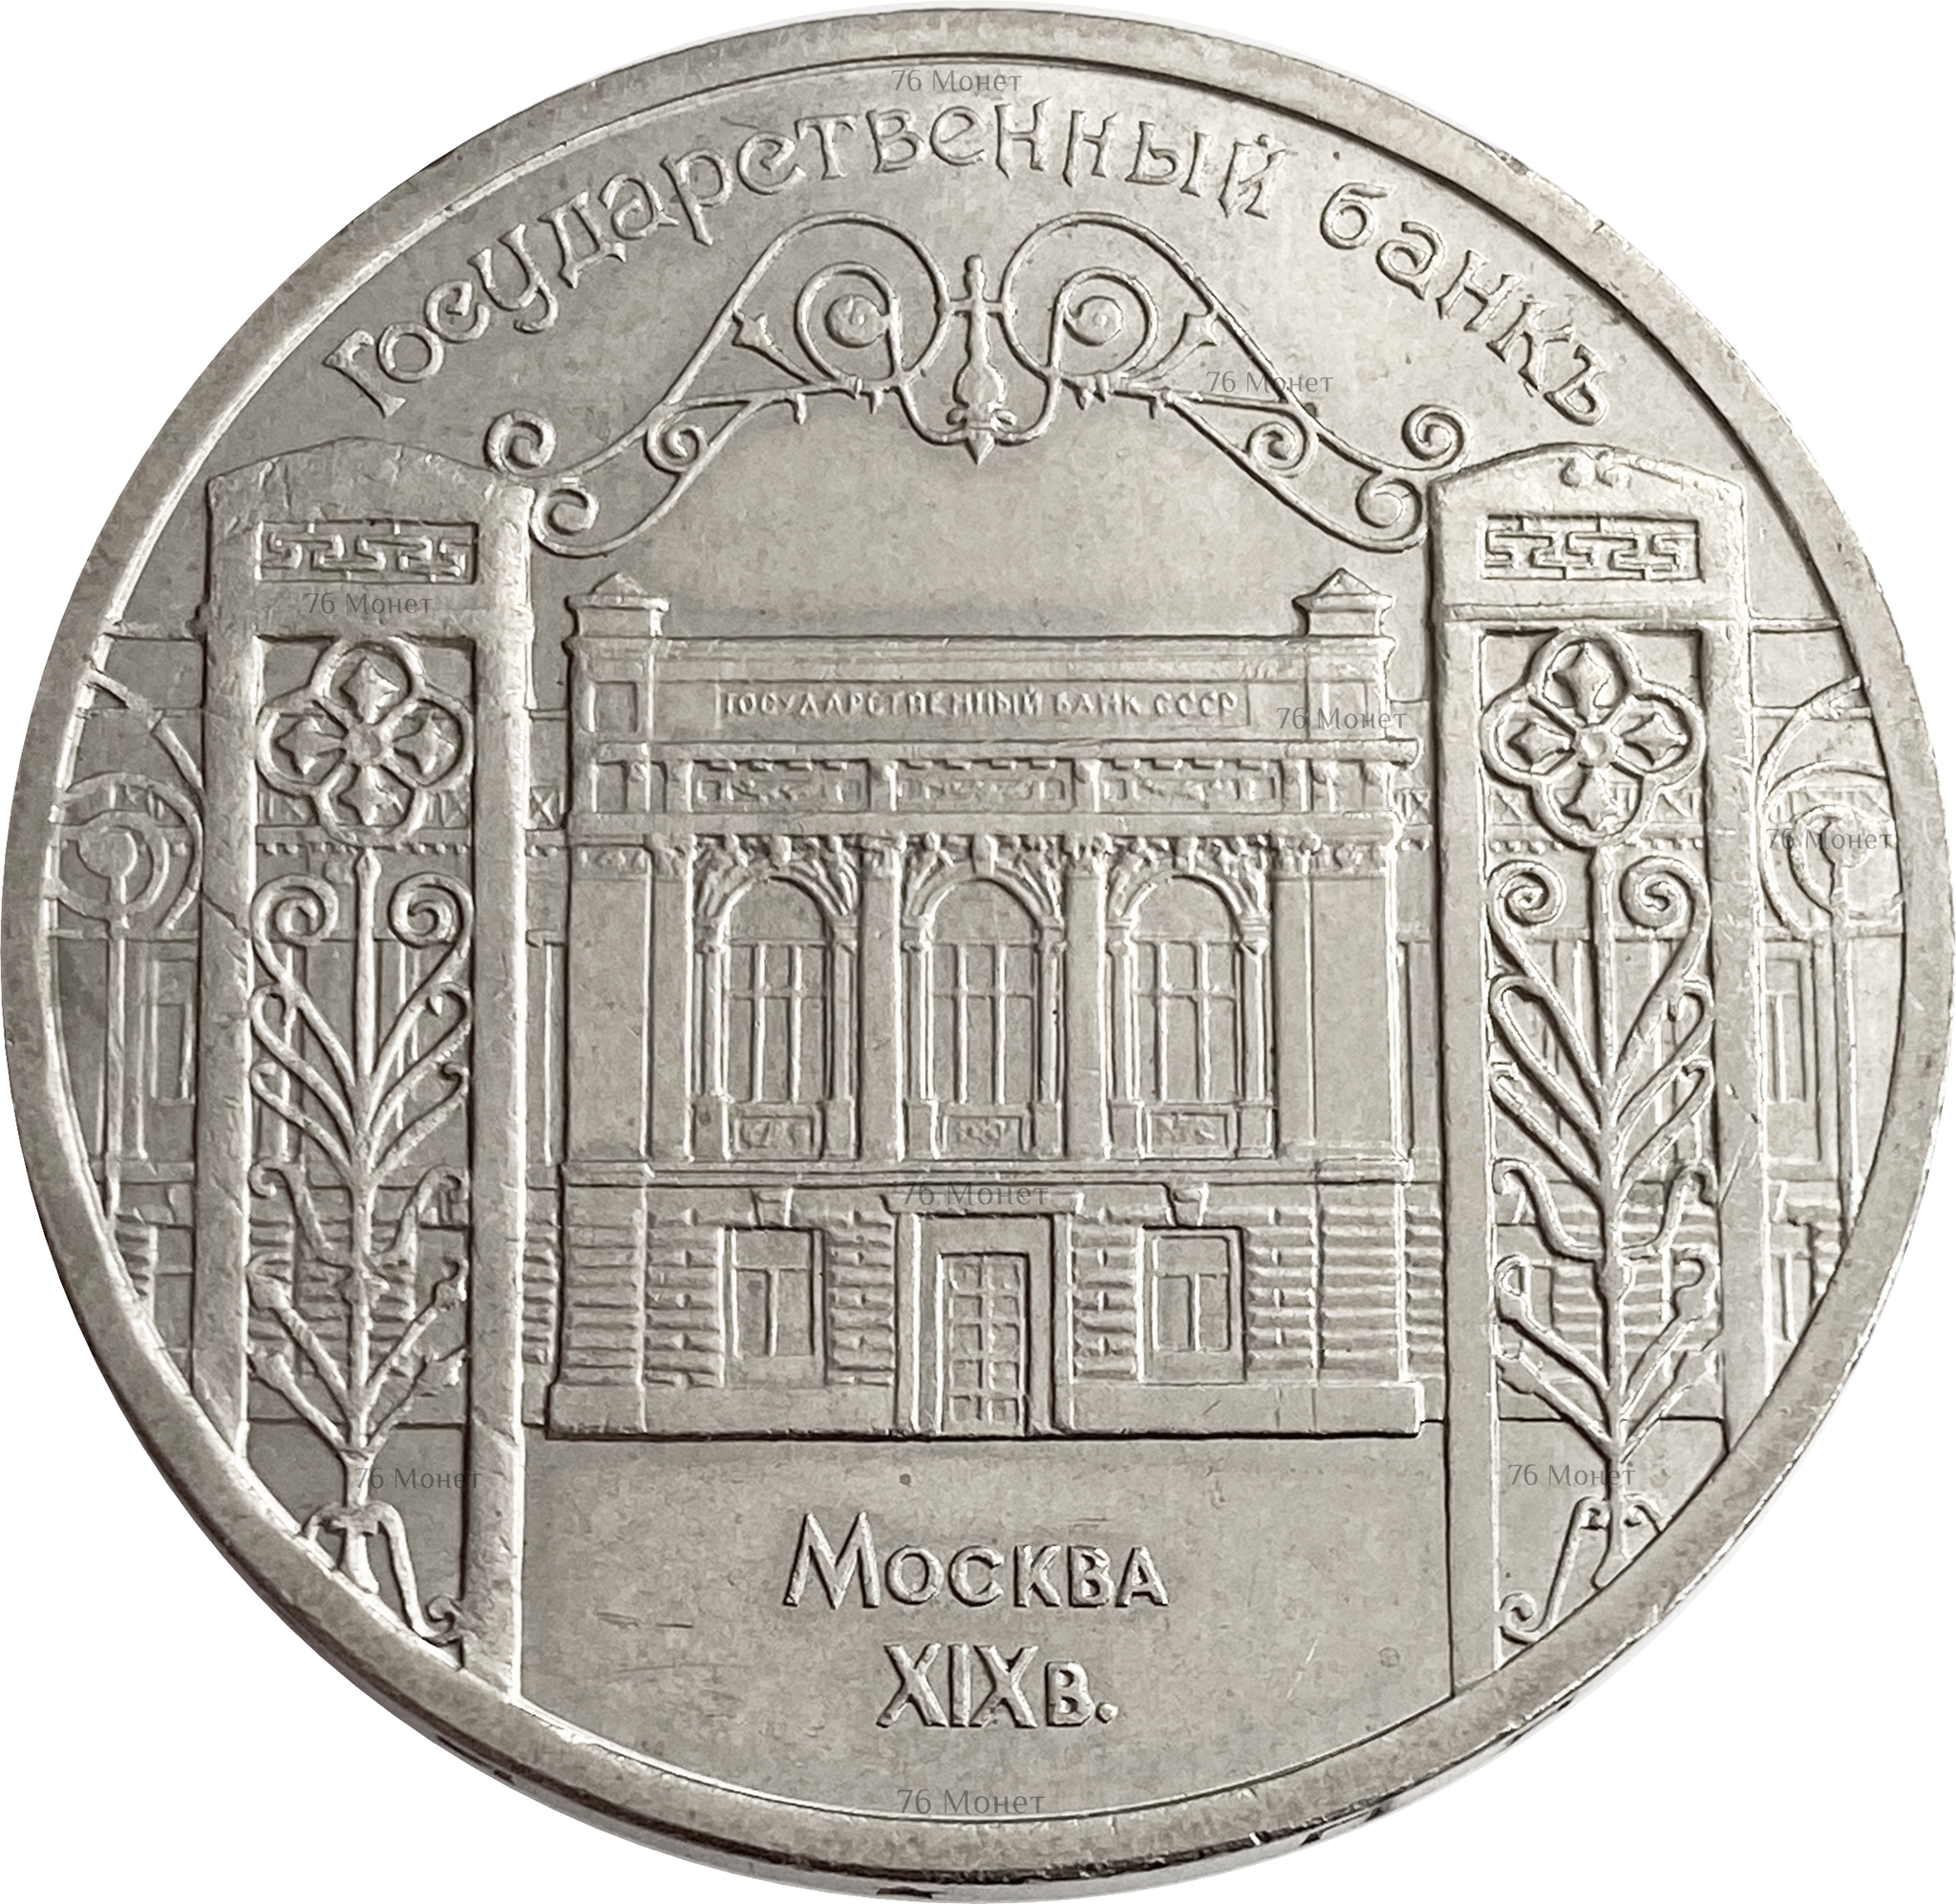 Монеты государственного банка СССР 1991. 5 Рублей 1991 года государственный банк. 5 рублей государственный банк